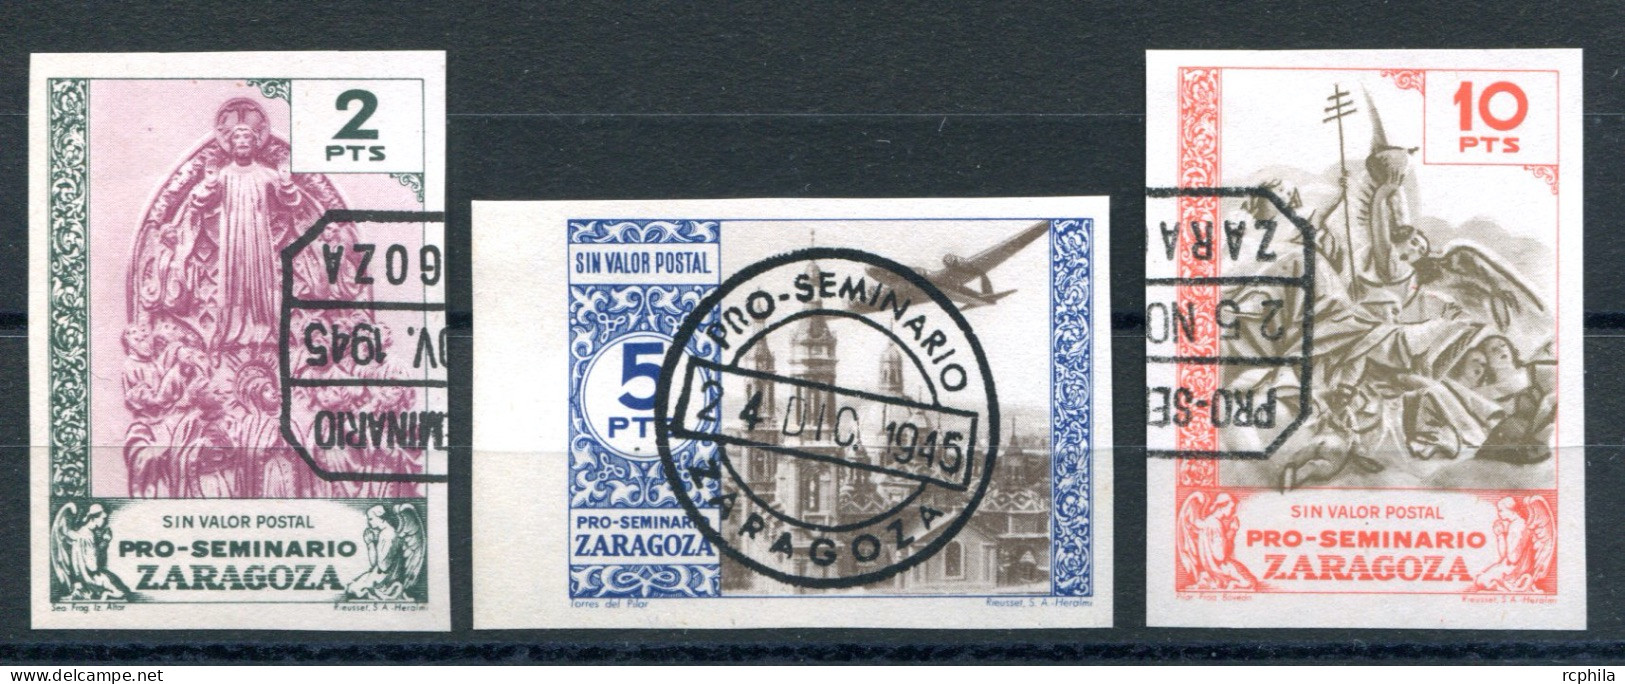 RC 26325 ESPAGNE 1945 PRO SEMINARIO DE ZARAGOZA VIGNETTES DE BIENFAISANCE NON DENTELÉES OBLITÉRÉES TB - Abarten & Kuriositäten